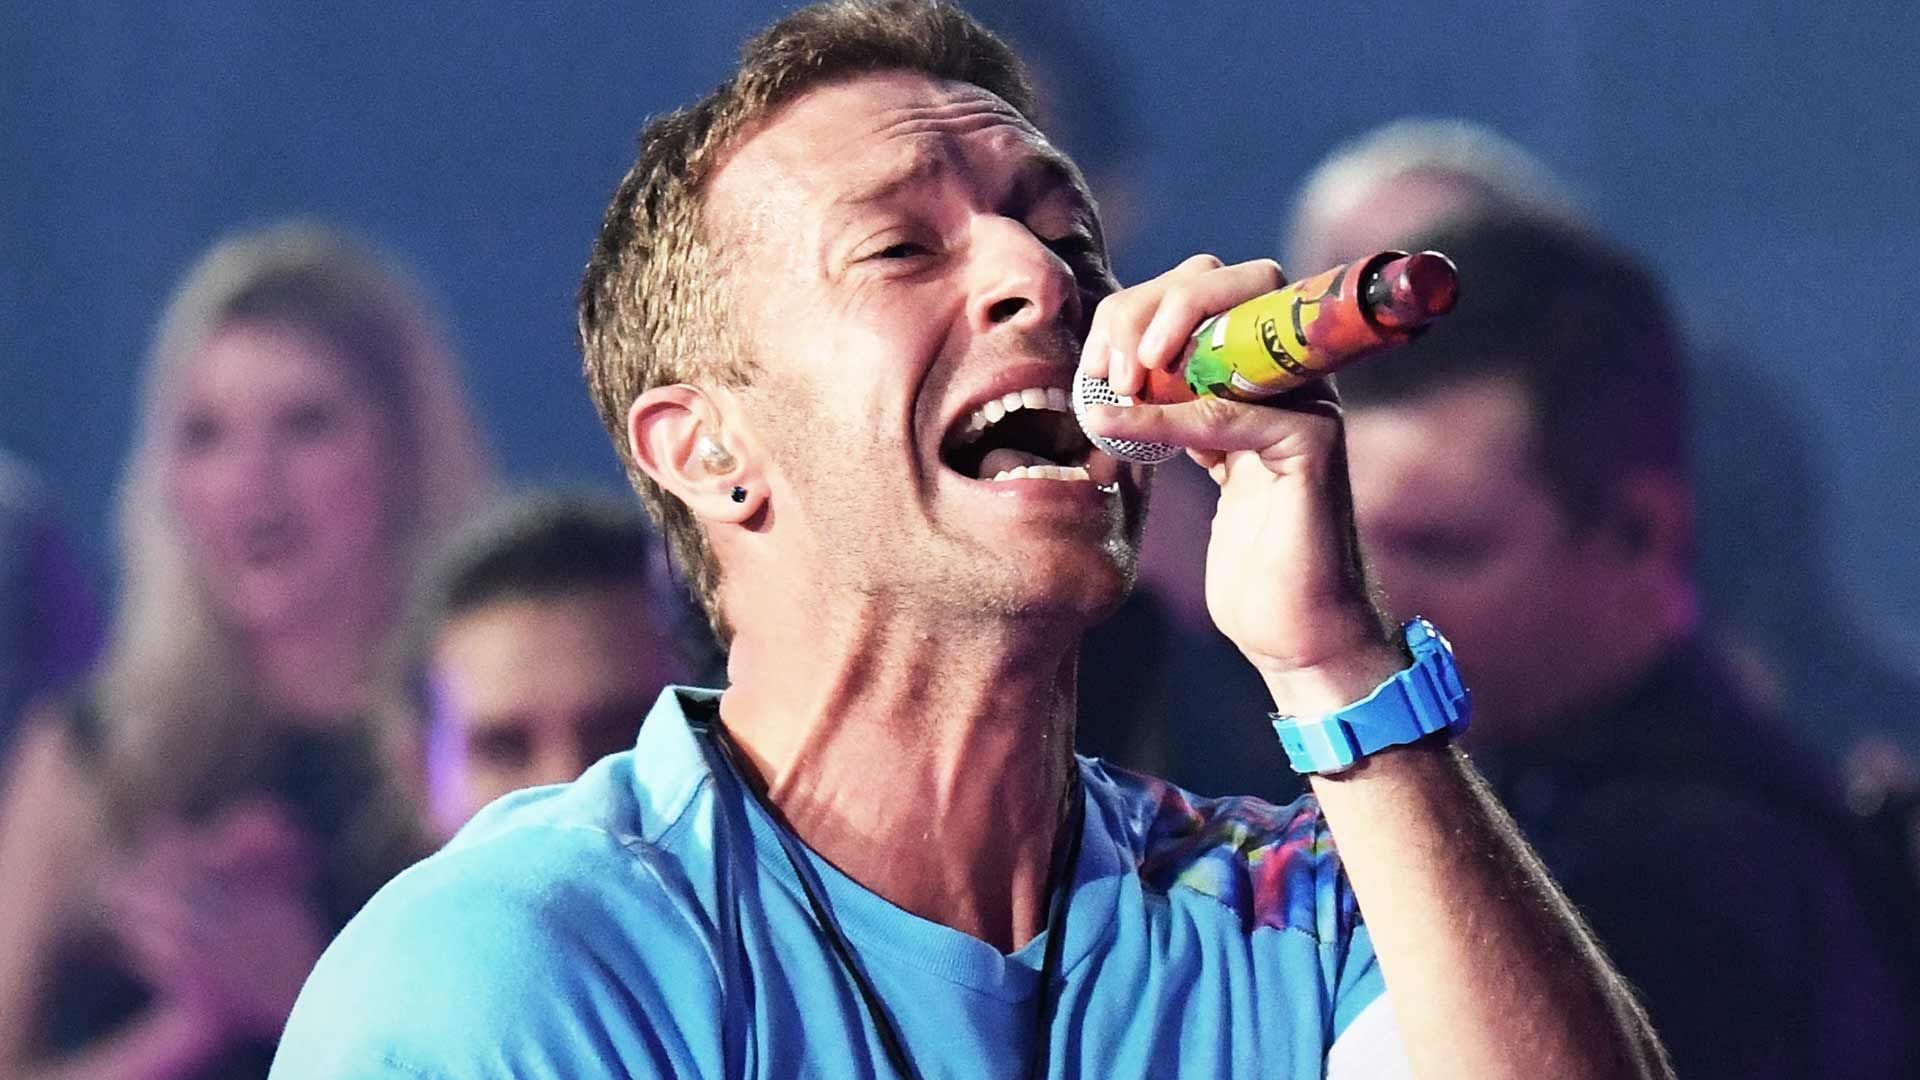 Chris Martin mengenakan kaos biru sedang menyanyikan lagu dalam sebuah konser